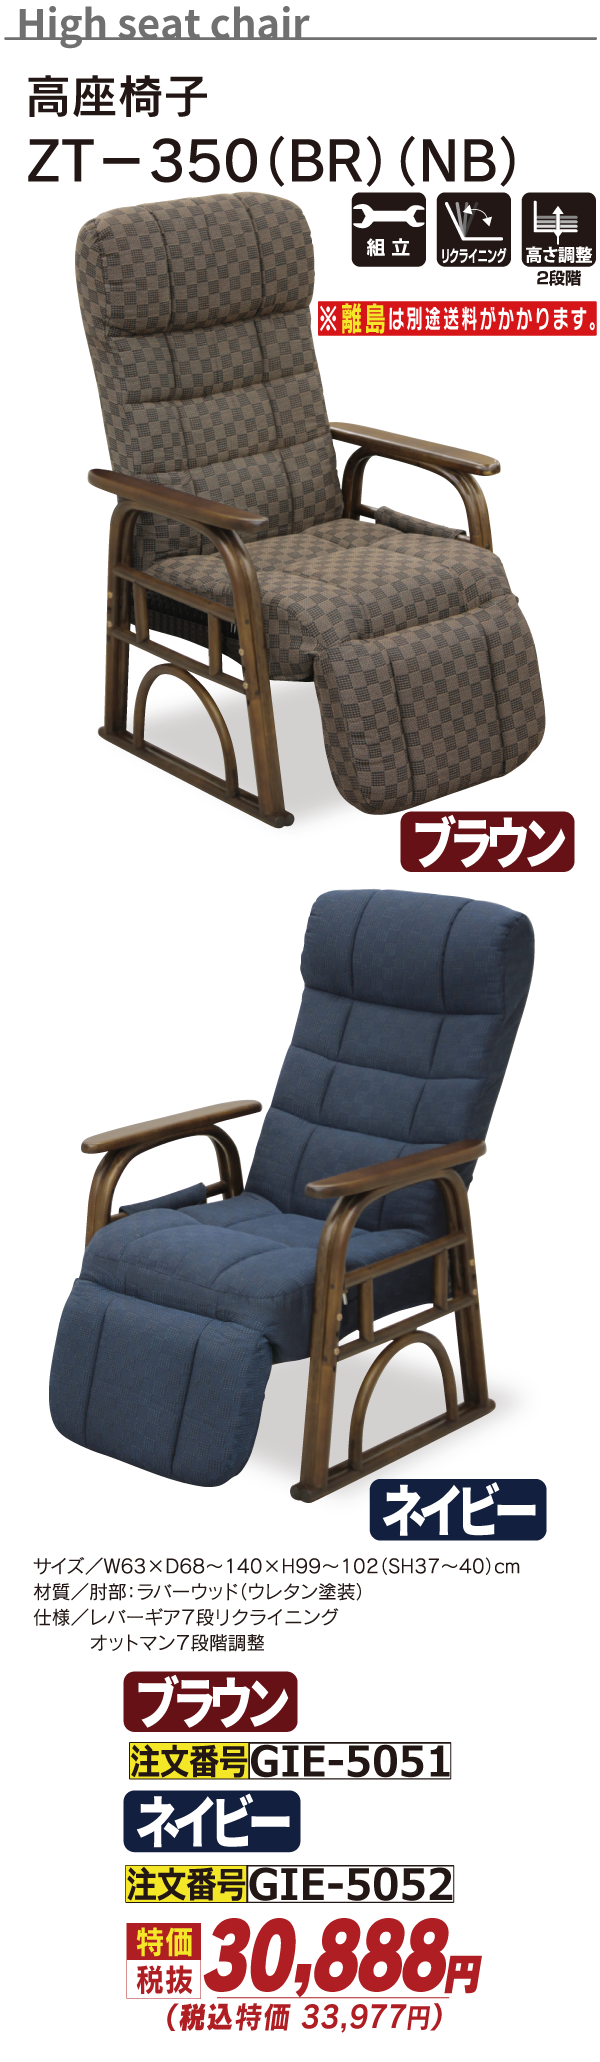 5051_高座椅子_ZT-350